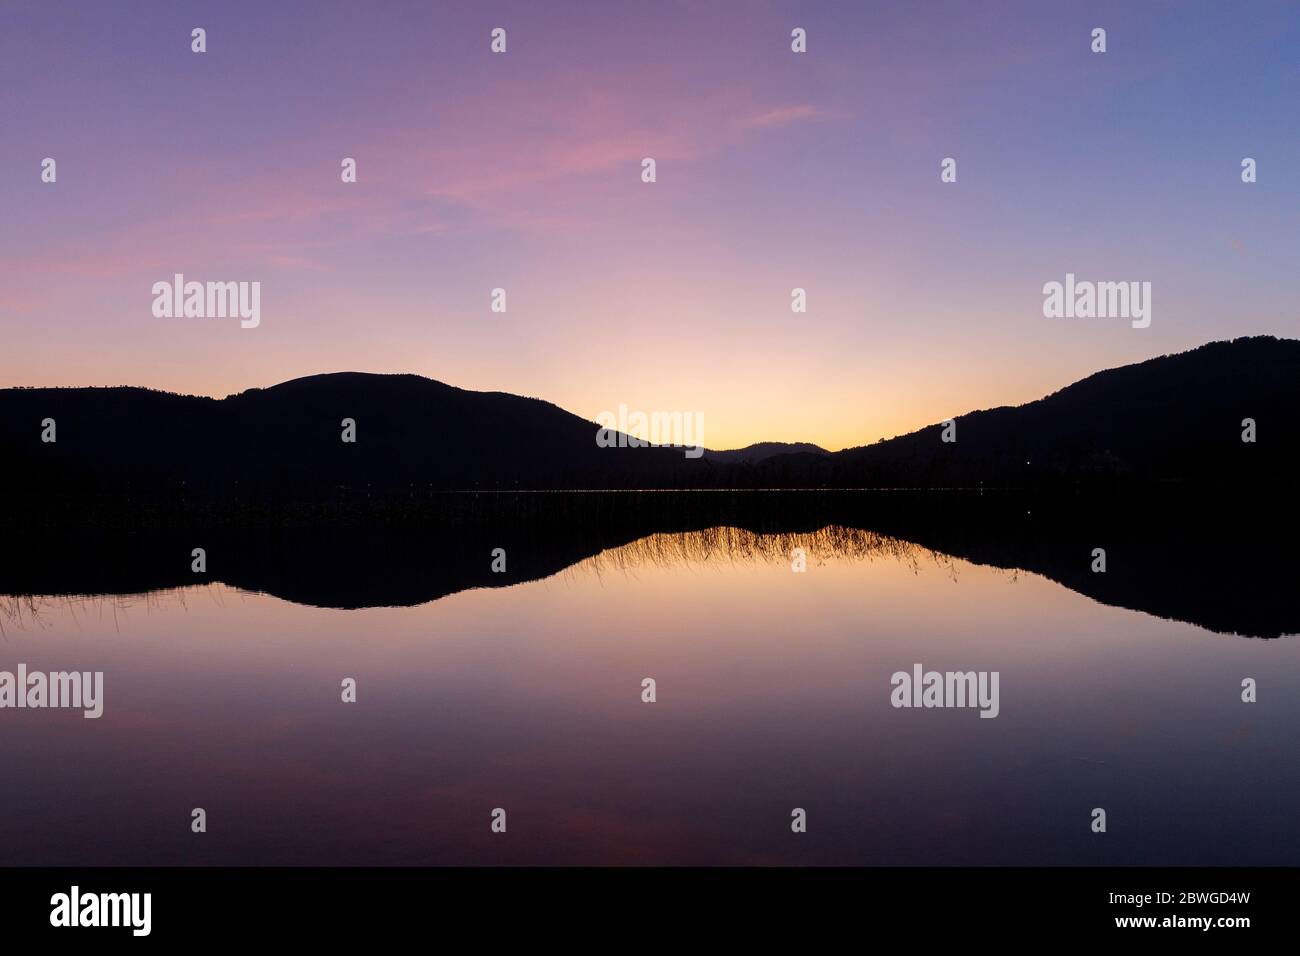 Sonnenuntergang am See Abant, in der Provinz Bolu, Türkei Stockfoto